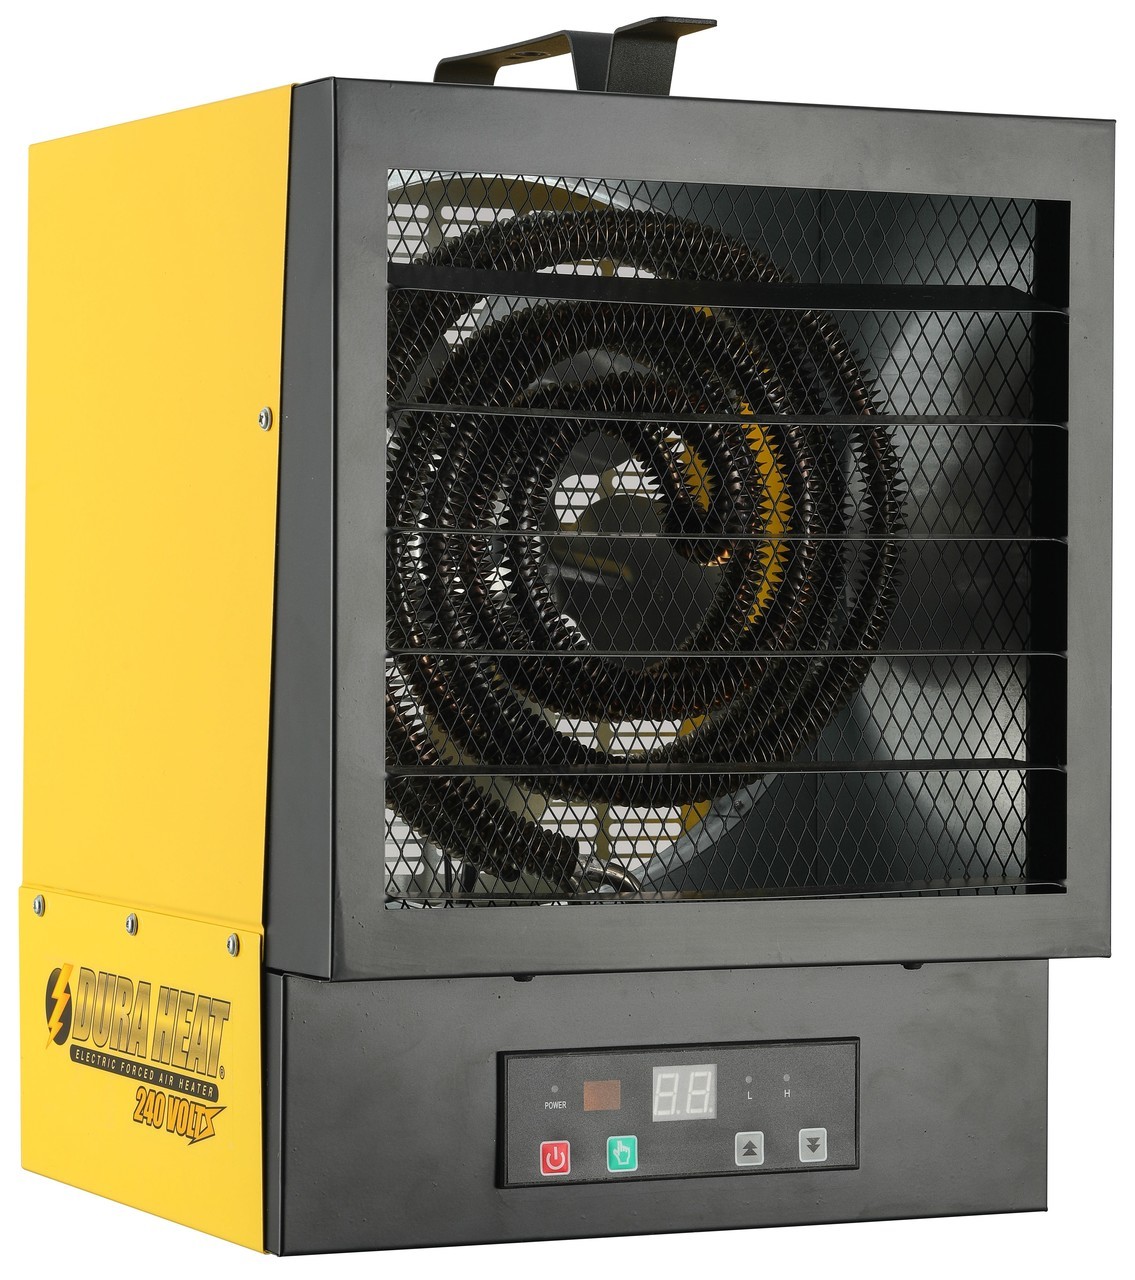 DuraHeat Garage Heater 750sqft